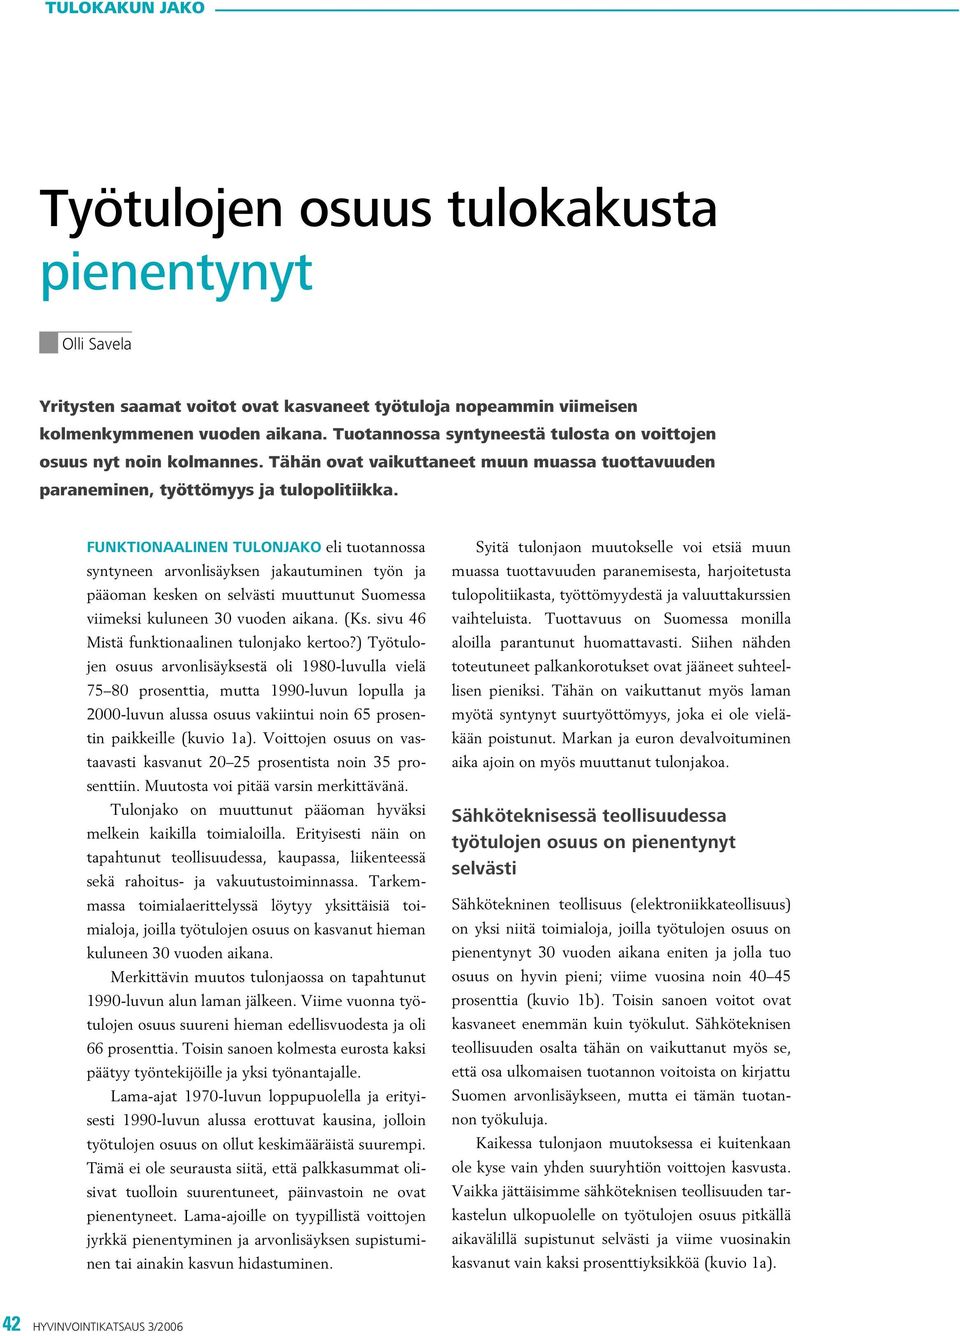 FUNKTIONAALINEN TULONJAKO eli tuotannossa syntyneen arvonlisäyksen jakautuminen työn ja pääoman kesken on selvästi muuttunut Suomessa viimeksi kuluneen vuoden aikana. (Ks.